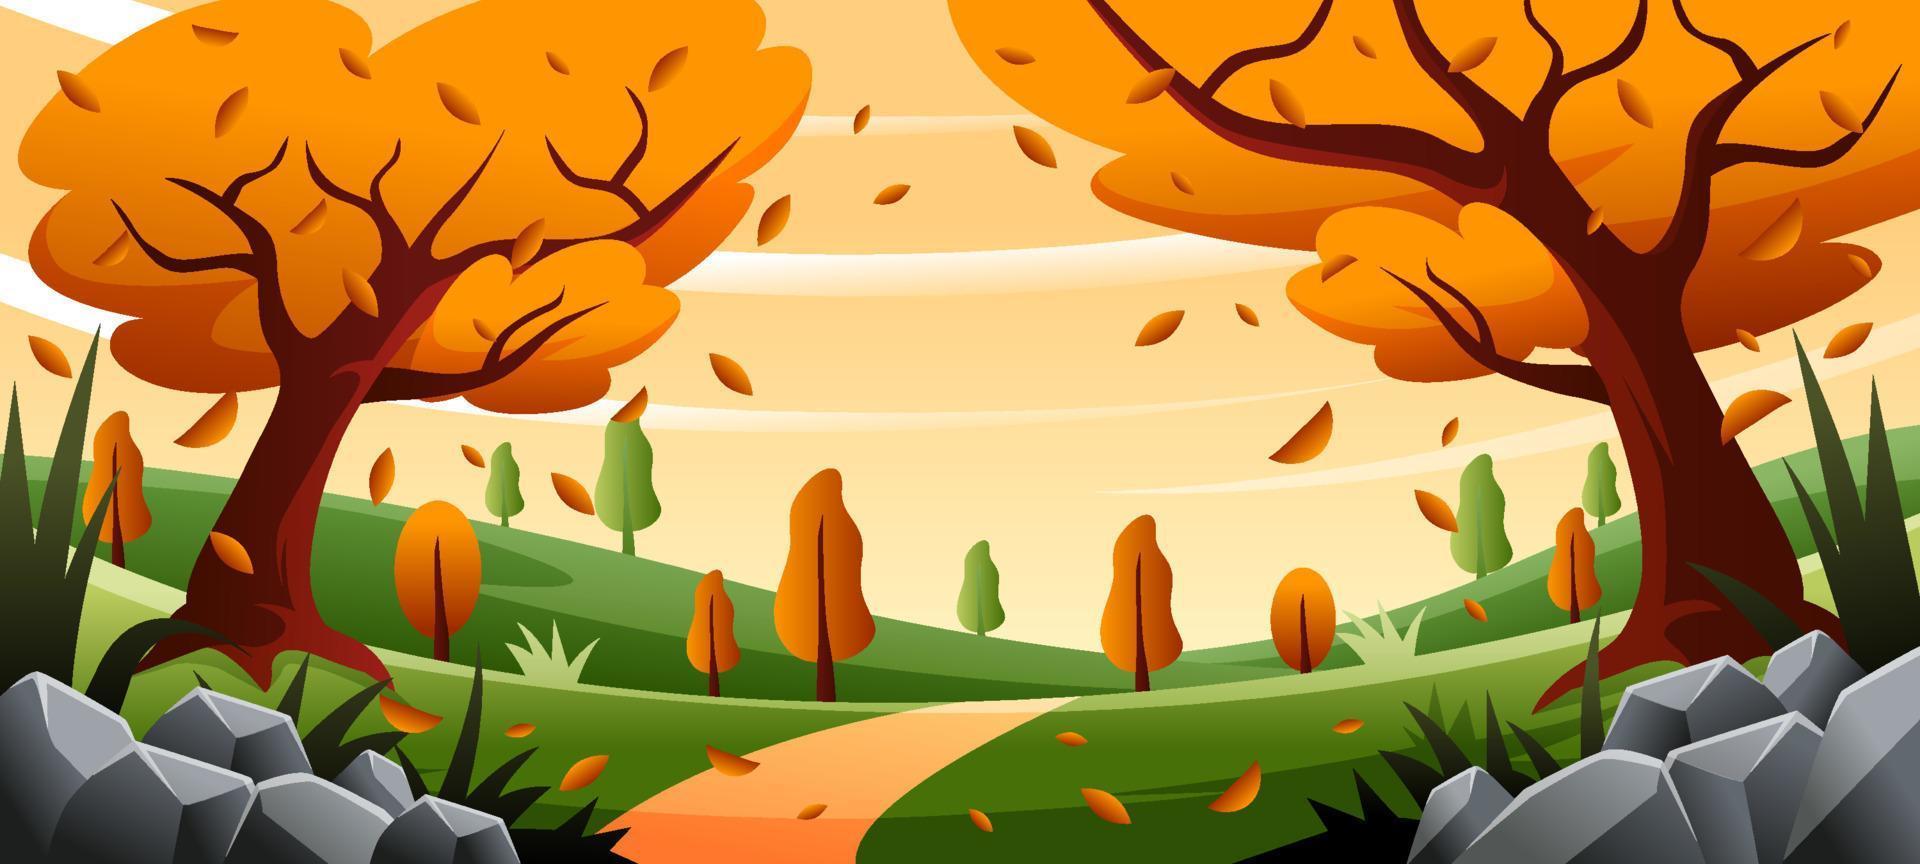 Landschaft im Herbst mit abgefallenen Blättern vektor